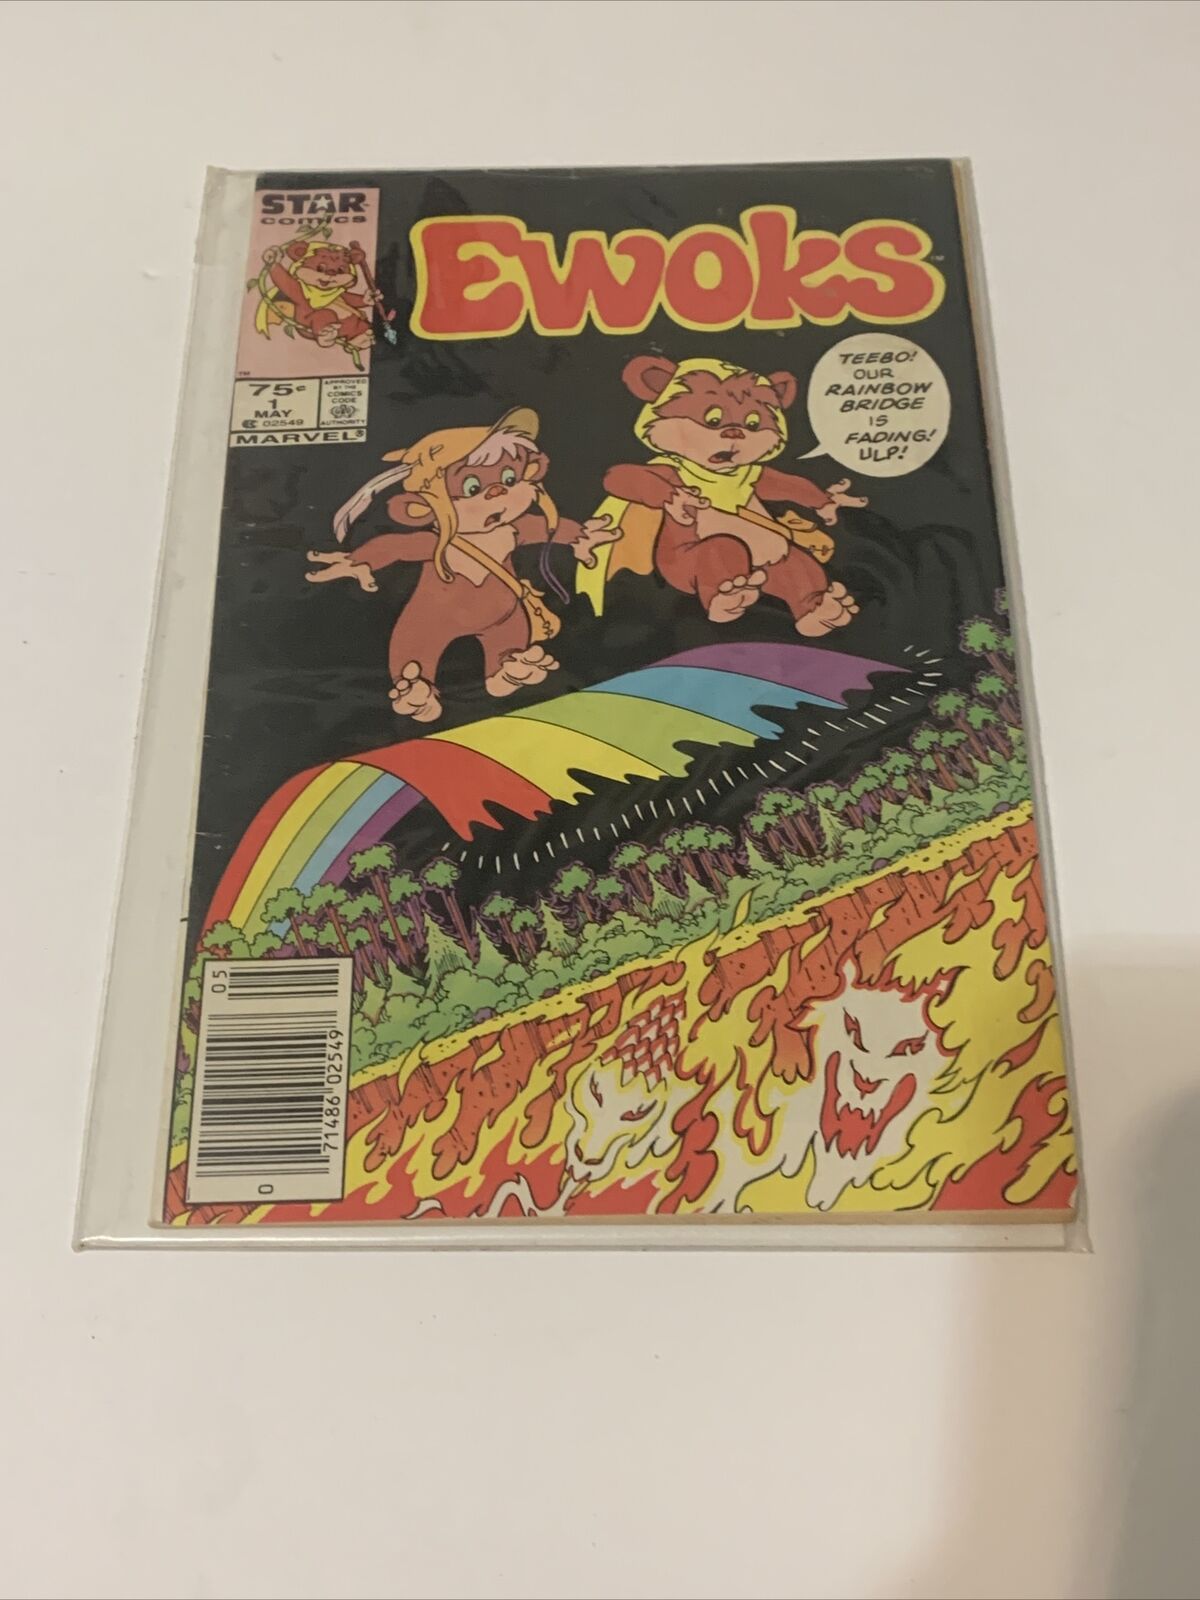 Ewoks #1 Newsstand Key Issue Star Wars Marvel/Star Comics 1985